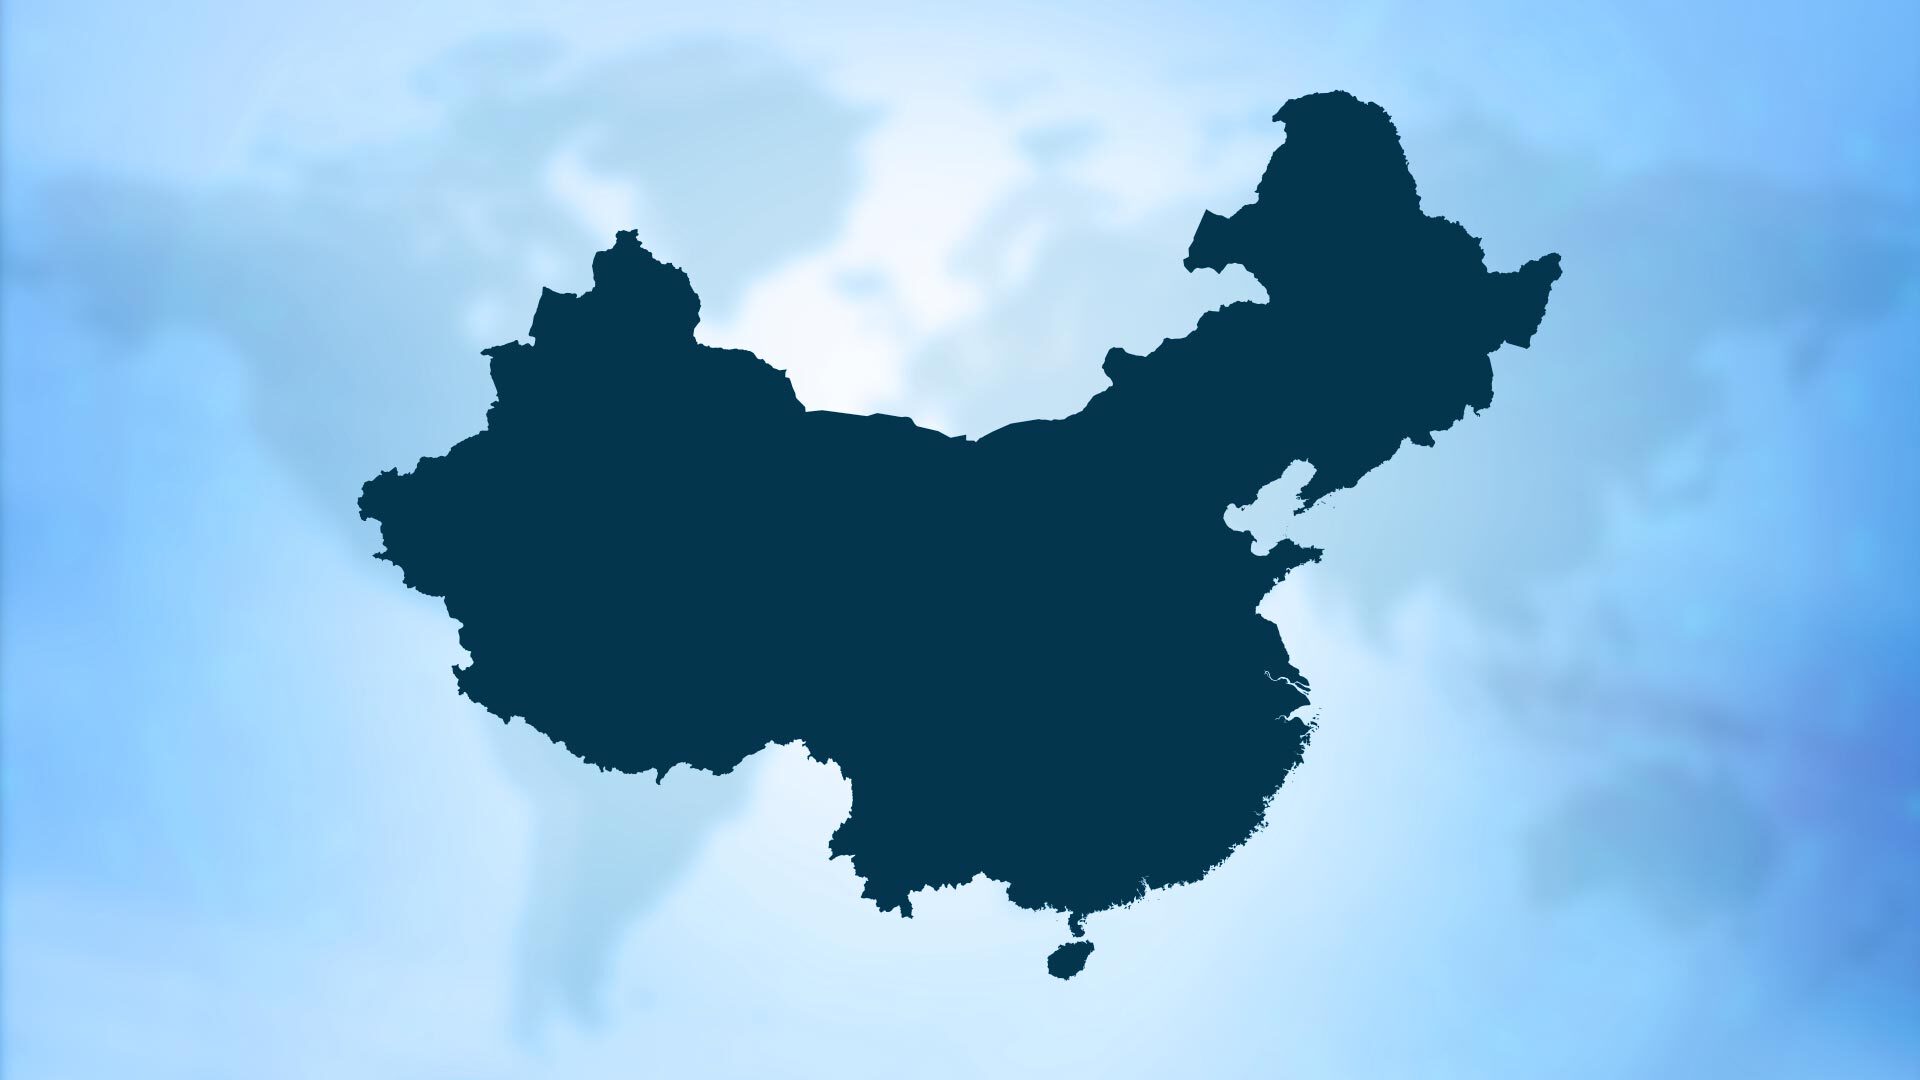 Stylized map of China